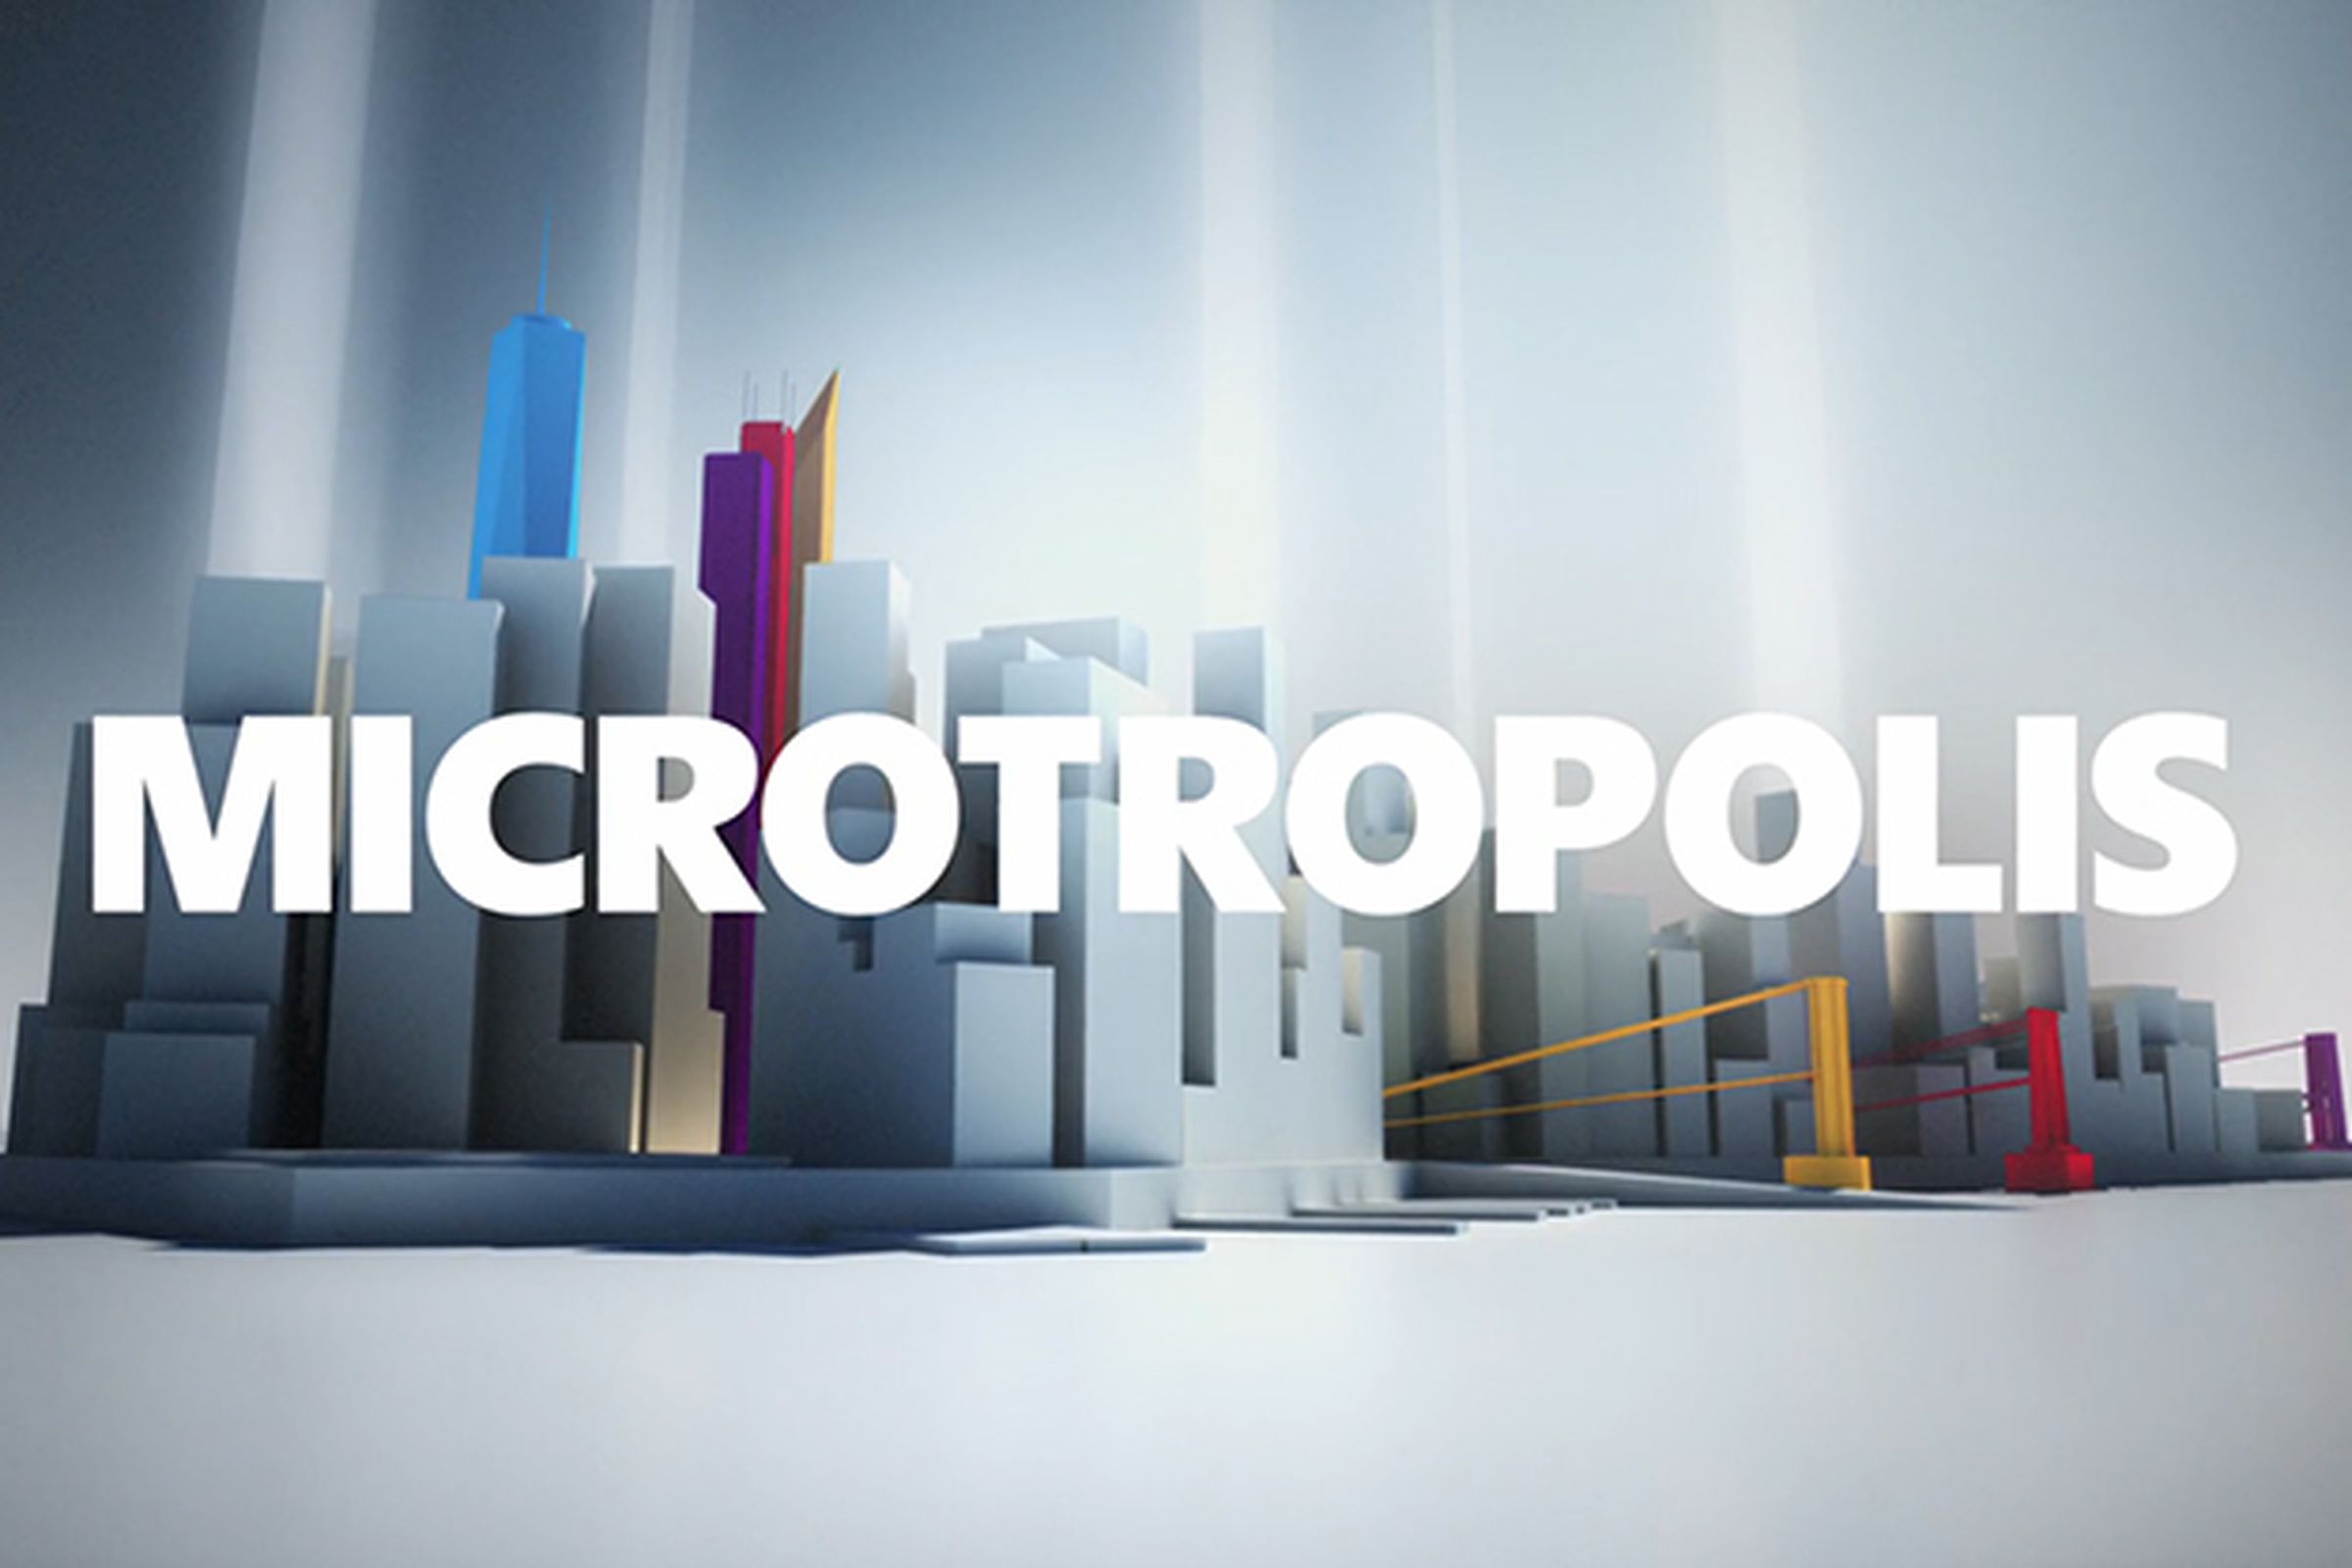 Microtropolis